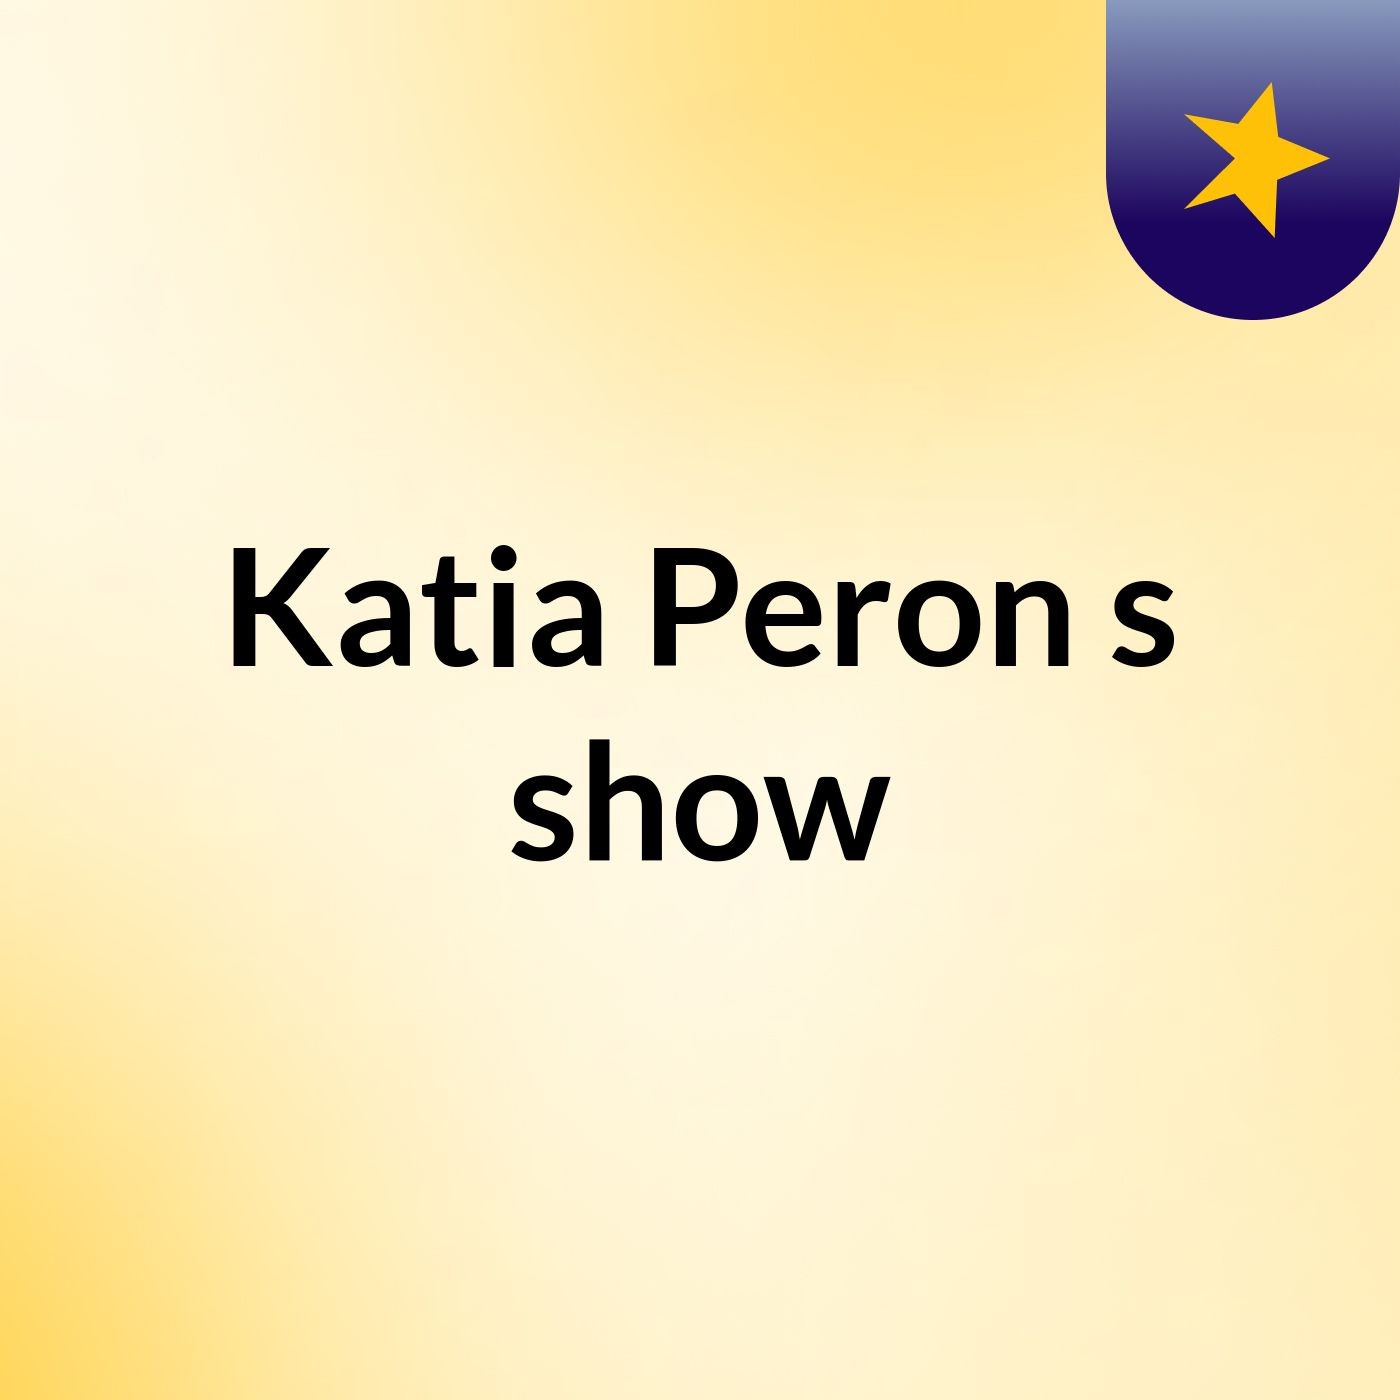 Katia Peron's show